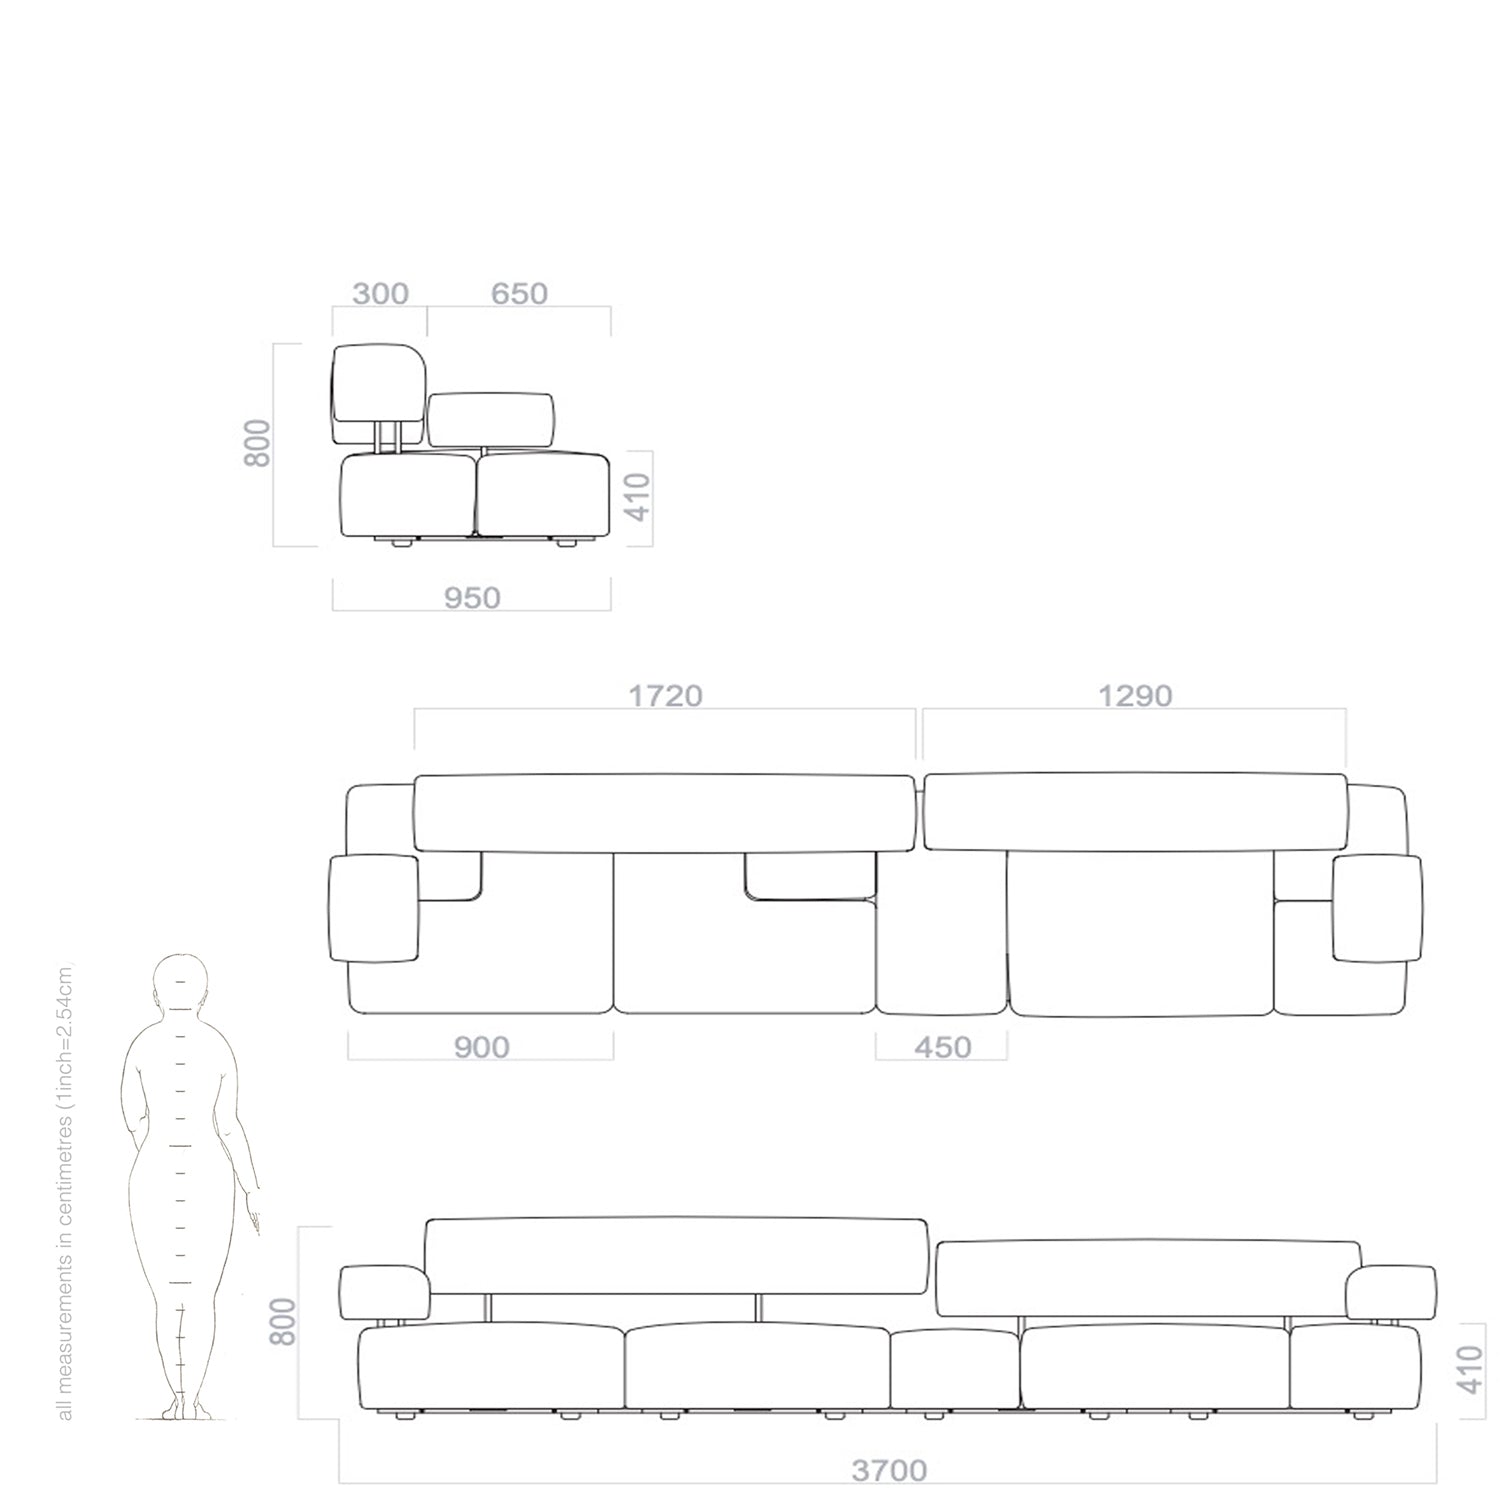 domino modular sofa plan, dimensions and drawings